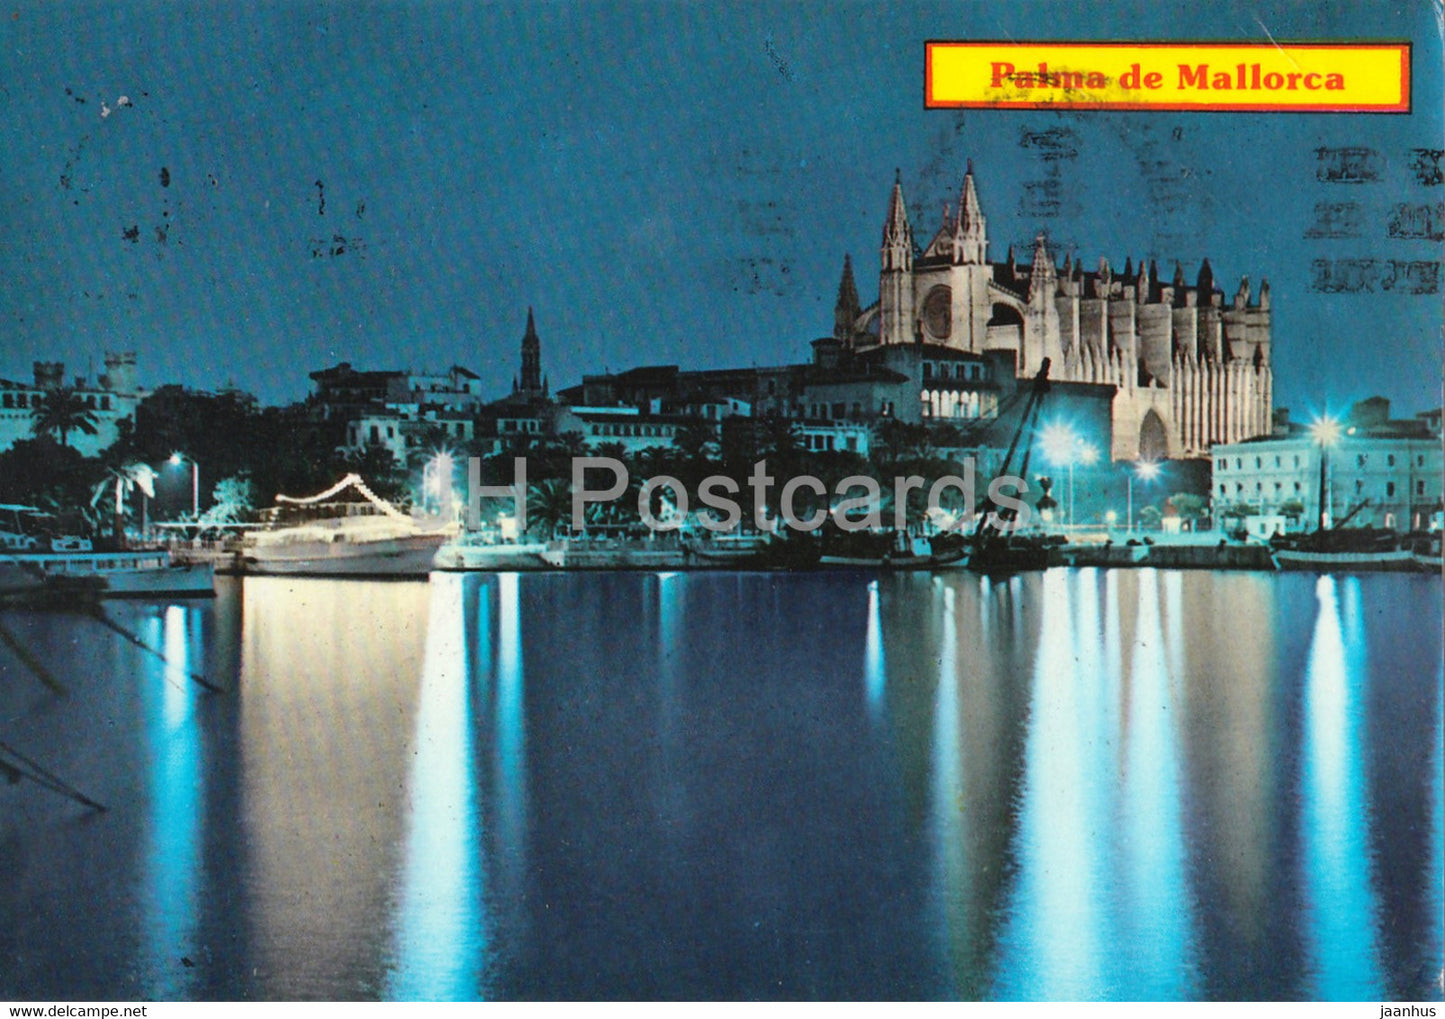 Palma de Mallorca - Catedral y Vista parcial de la bahia de noche - Cathedral - bay - 183 - Spain - used - JH Postcards